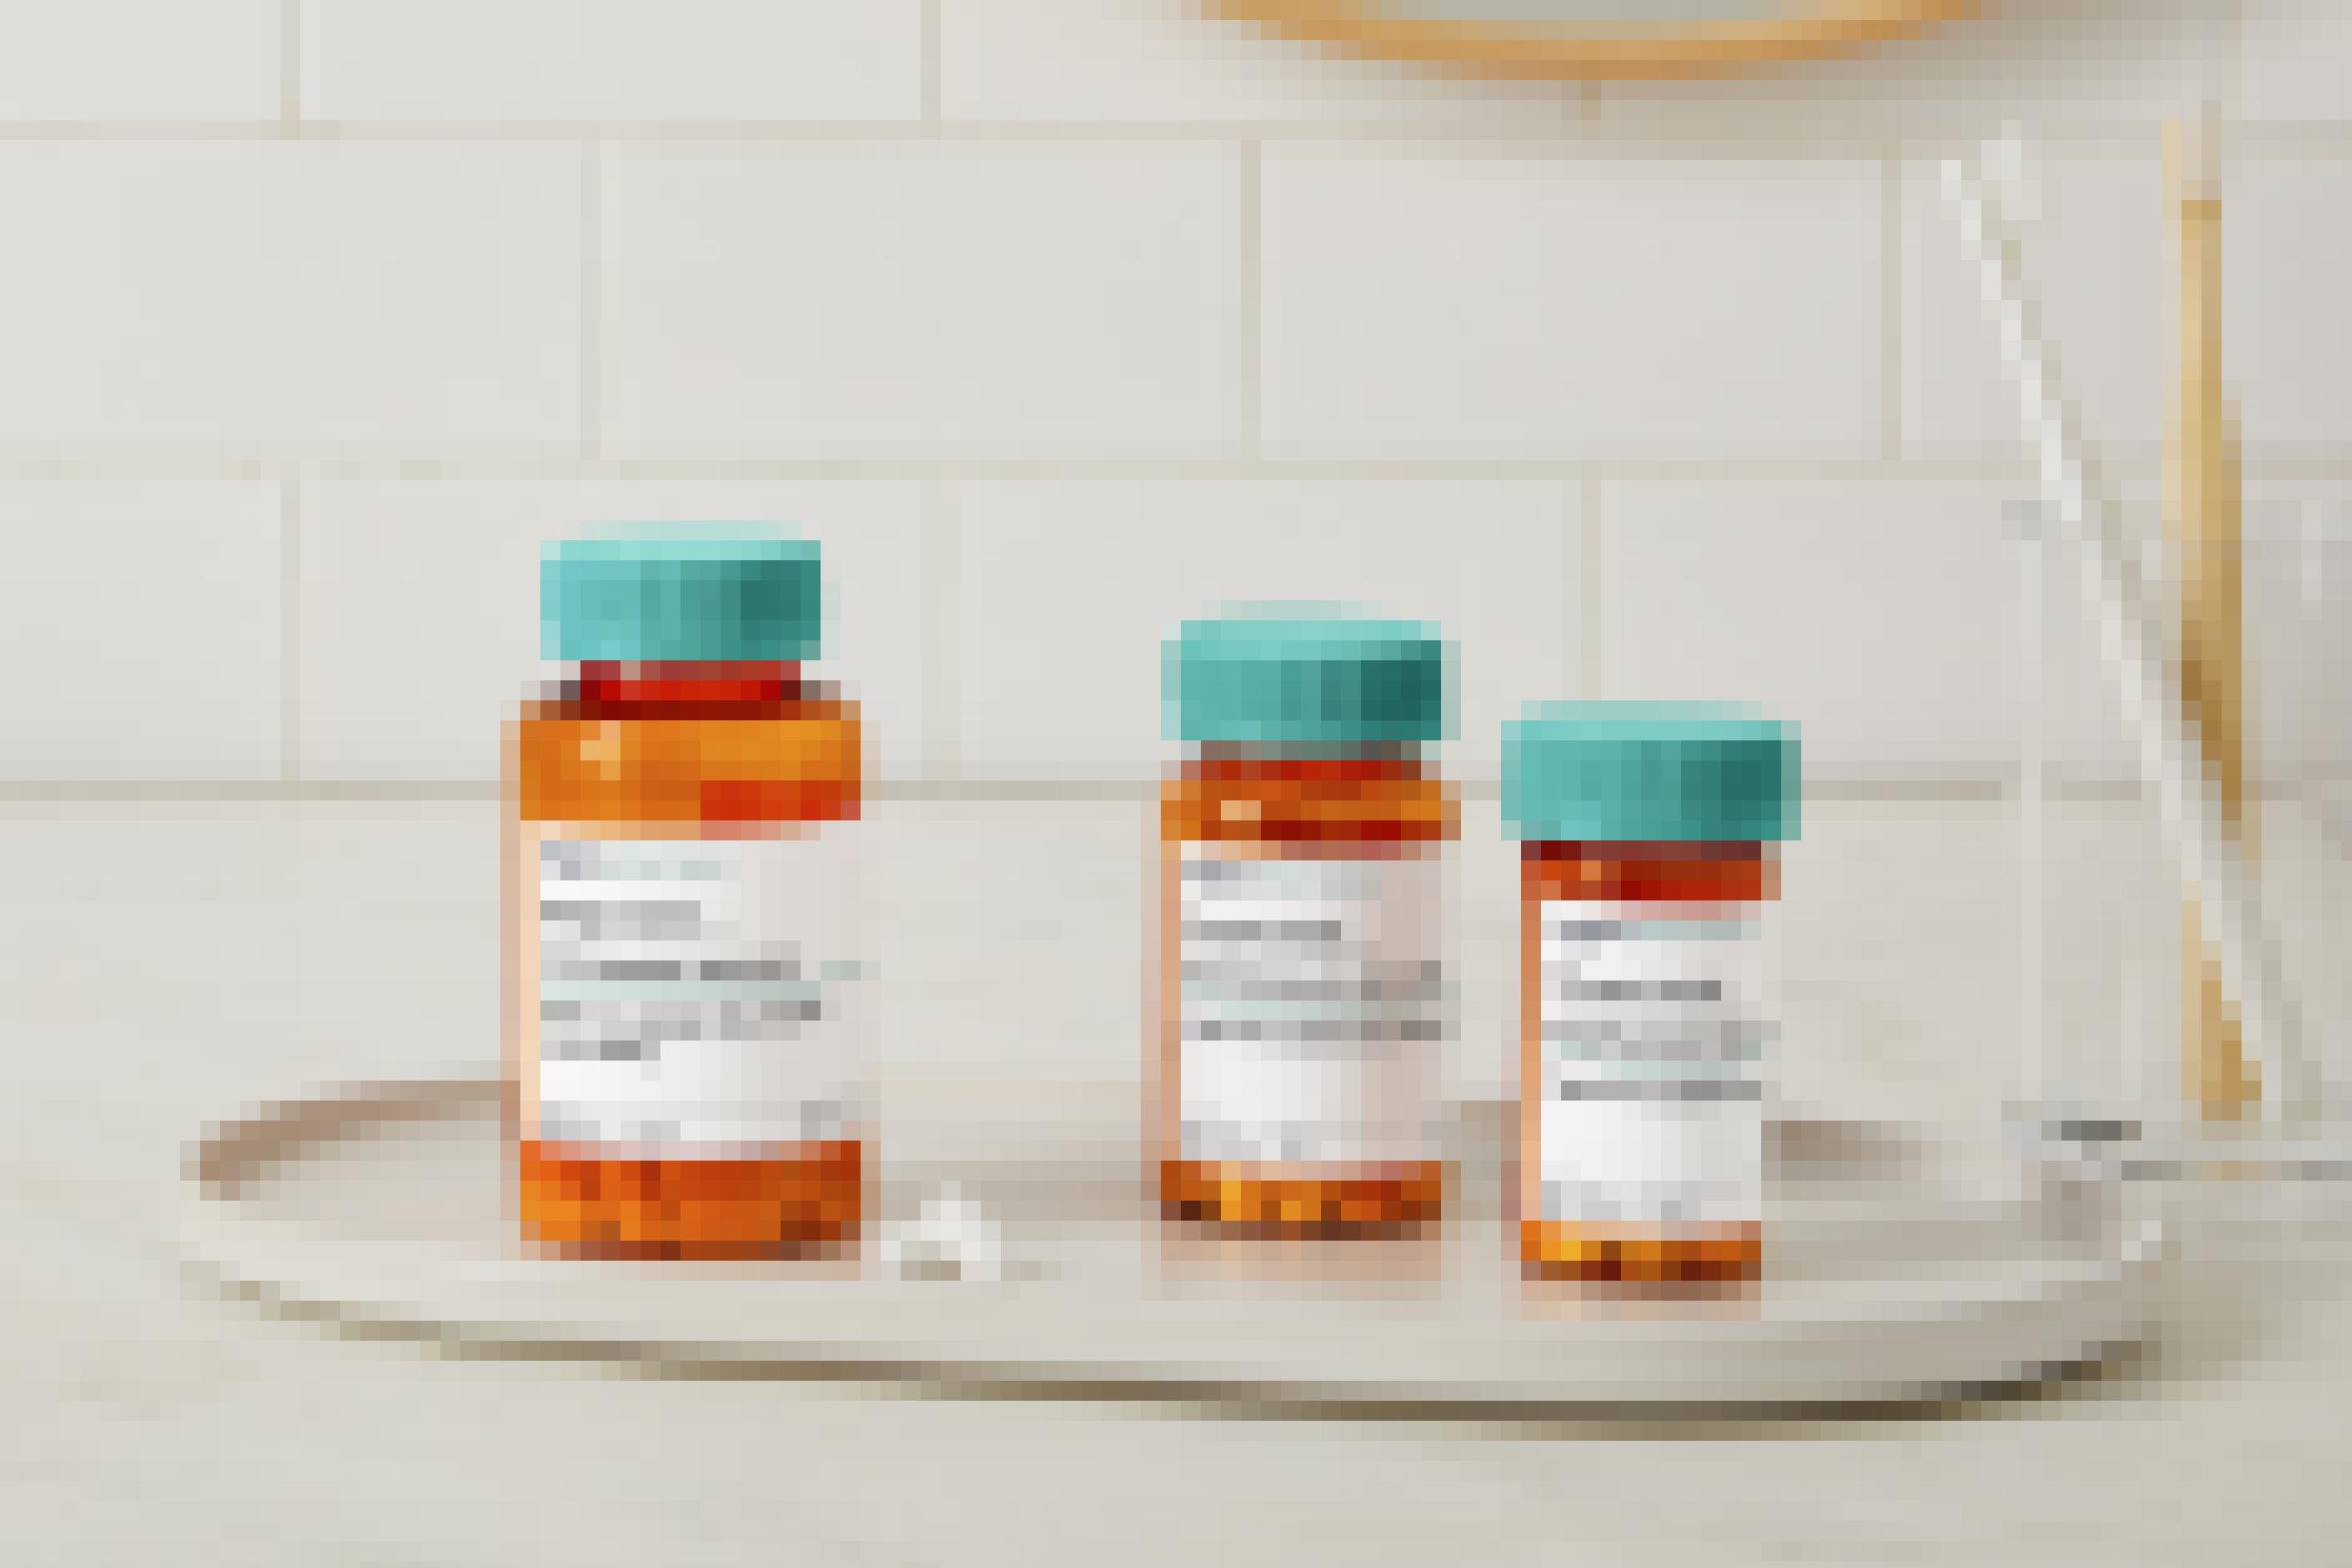 Medikamentenfläschchen mit Namen und täglicher Dosis. Amazon Pharmacy versendet persönlich dosierte Arzneien.